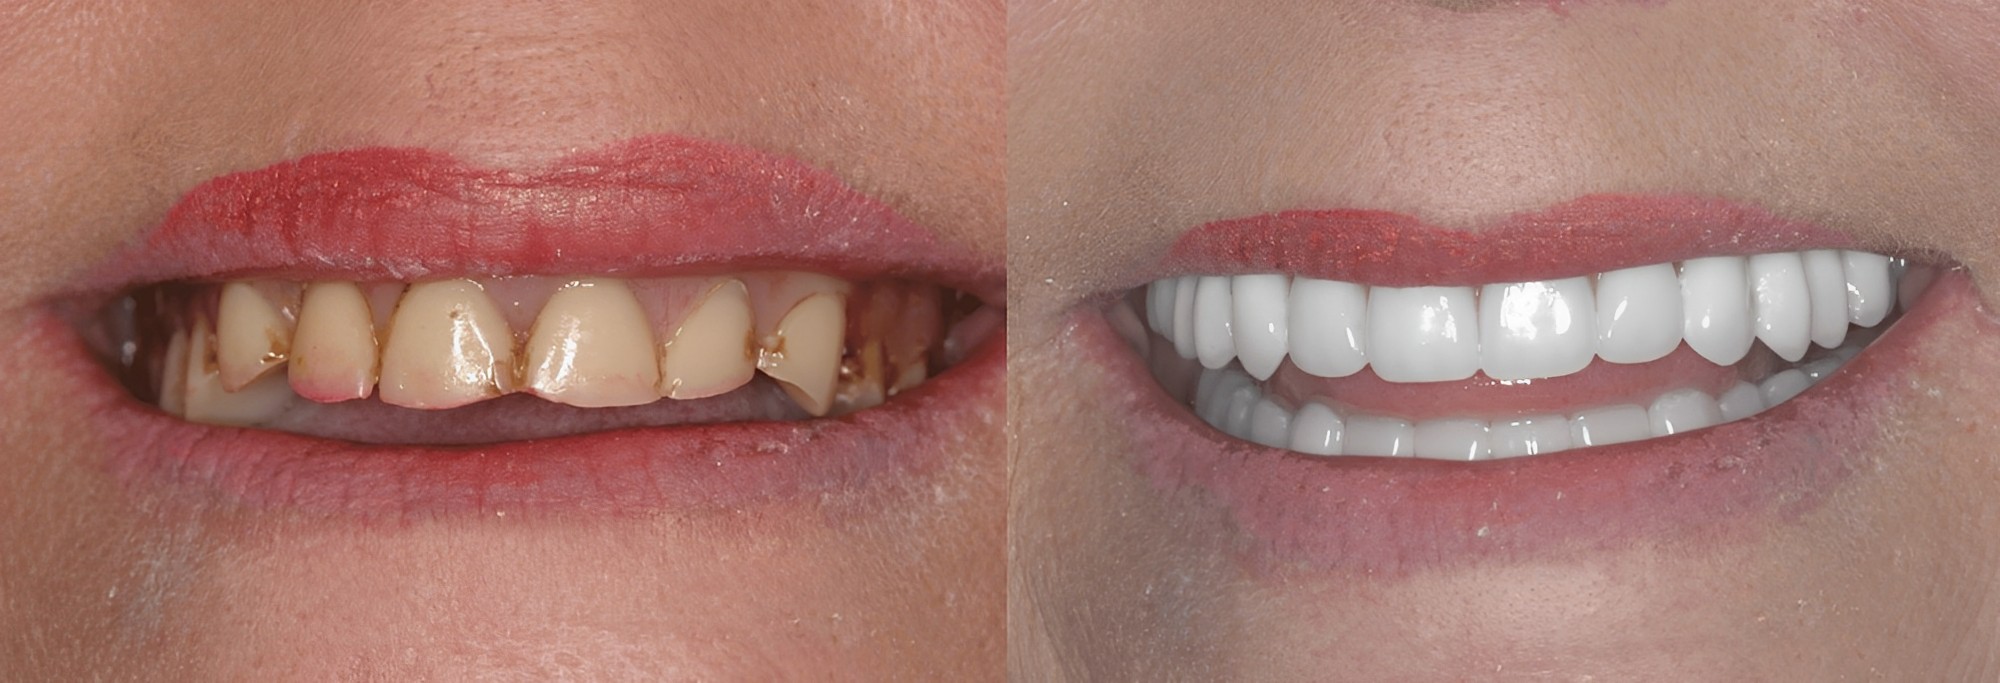 Dentures patient